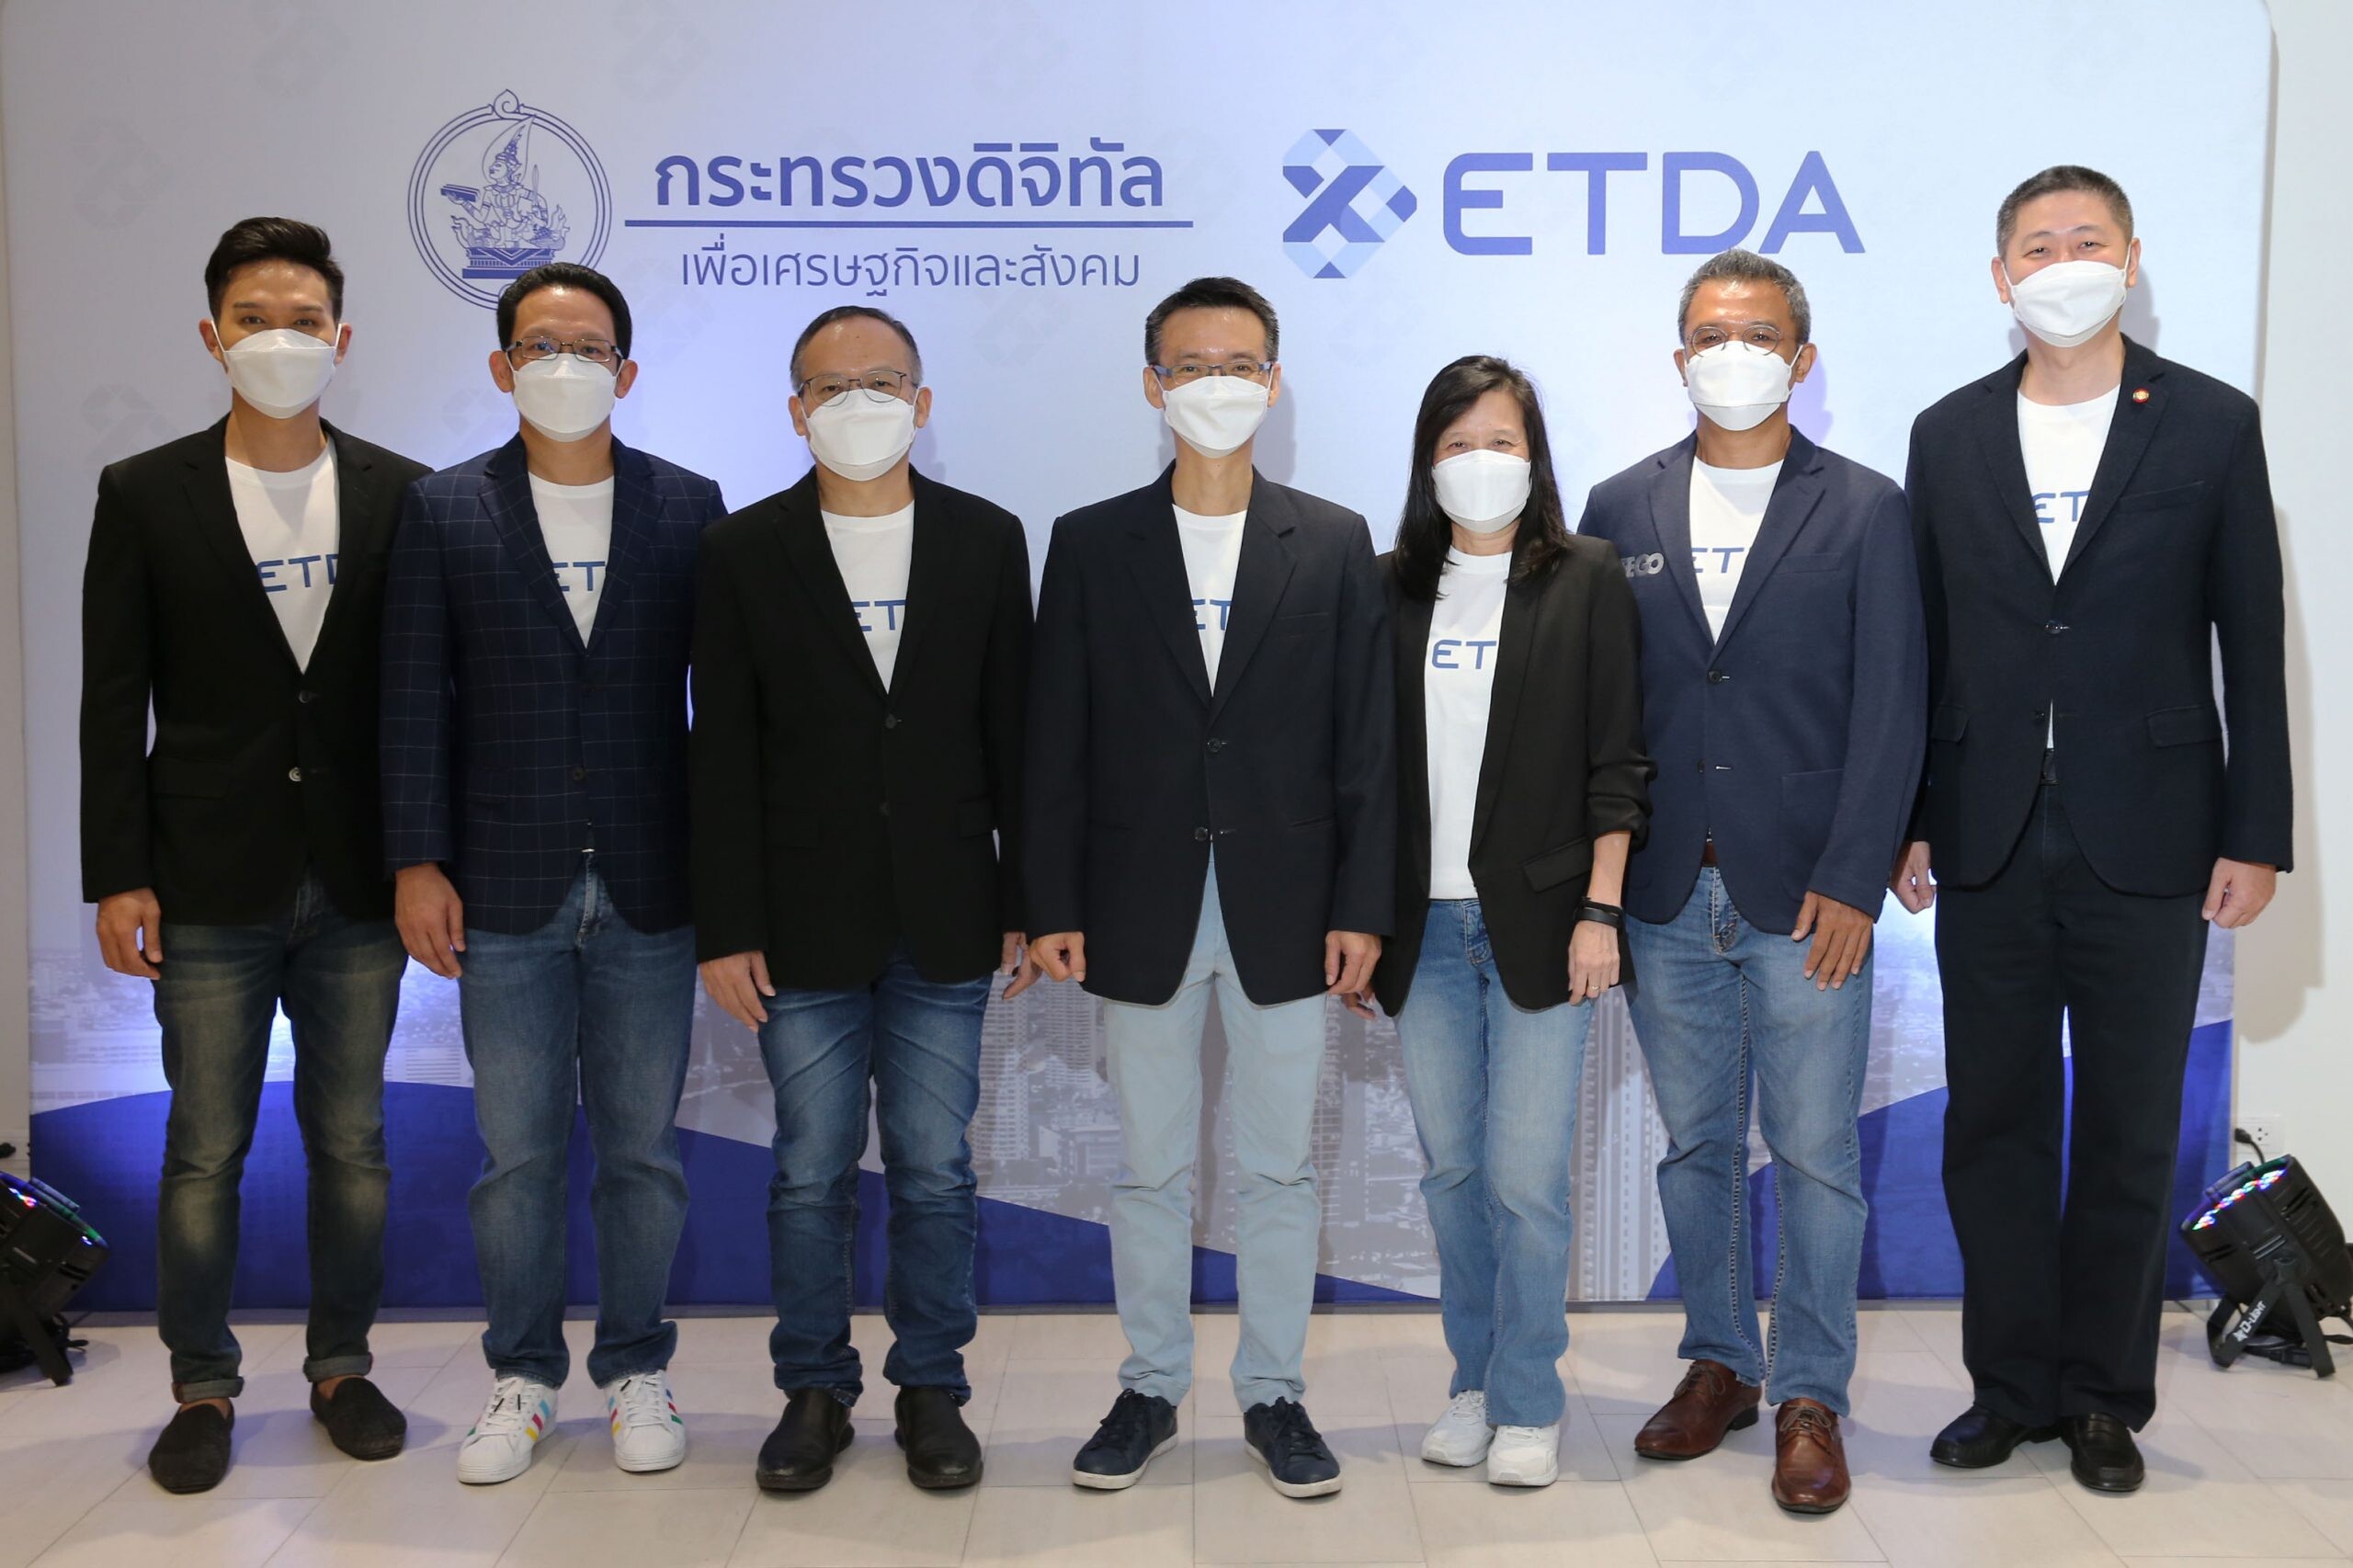 ETDA รับก้าวใหม่ ปี 65 ตั้งเป้า "ยกระดับชีวิตคนไทยด้วยเทคโนโลยีดิจิทัล"